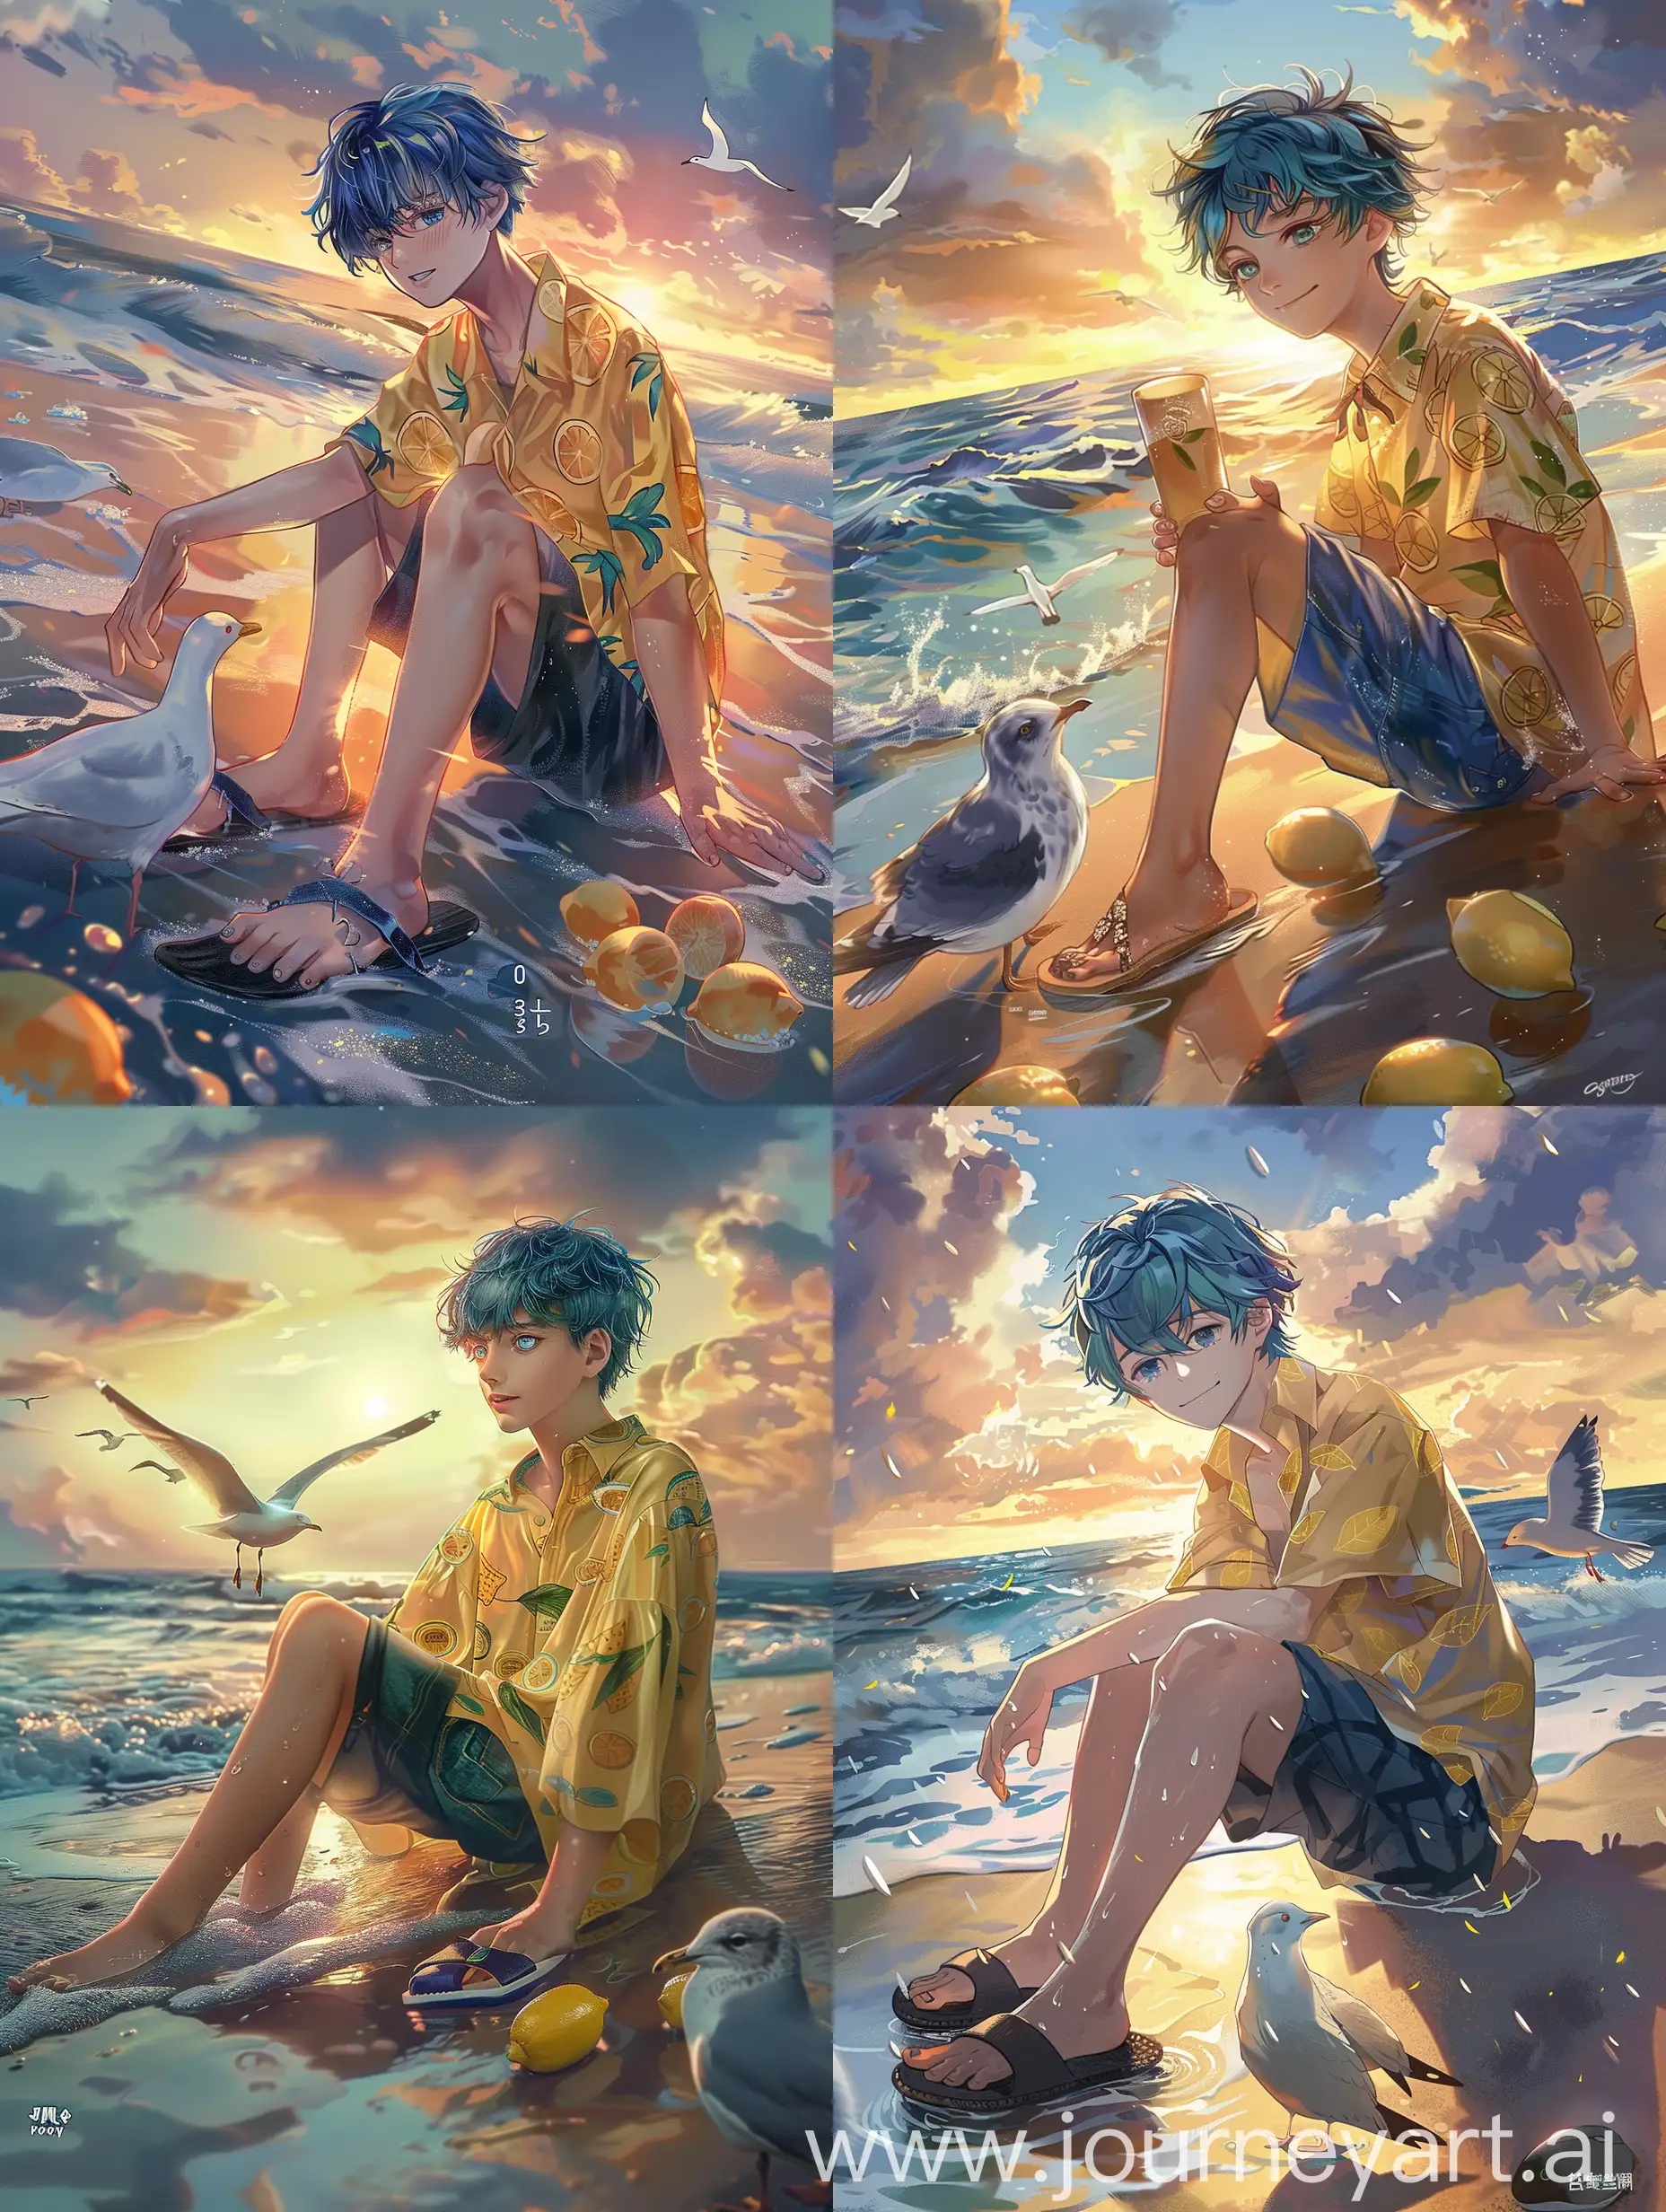 Молодой парень, синие волосы, голубые глаза, полупрозрачная желтая блузка с рисунками лимона, темные шорты, шлепанцы, сидит на берегу пляжа, закат, рядом ретвирер